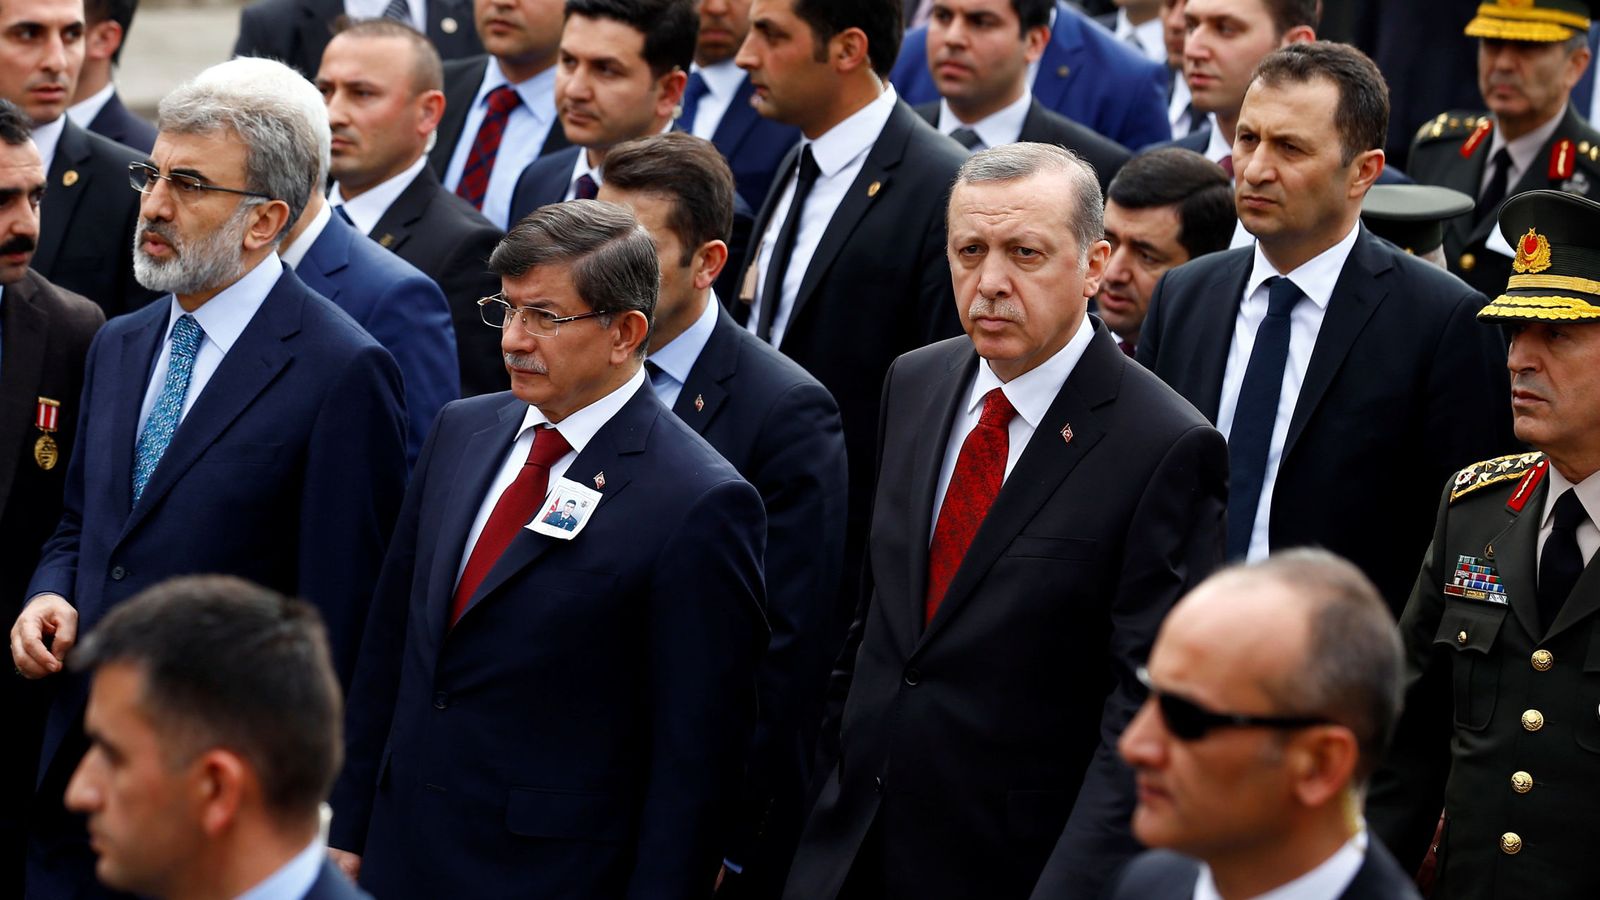 Foto: El Primer Ministro Ahmet Davutoglu junto al Presidente Recep Tayyip Erdogan, durante un funeral de un soldado abatido por la guerrilla kurda, en febrero de 2016 (Reuters)